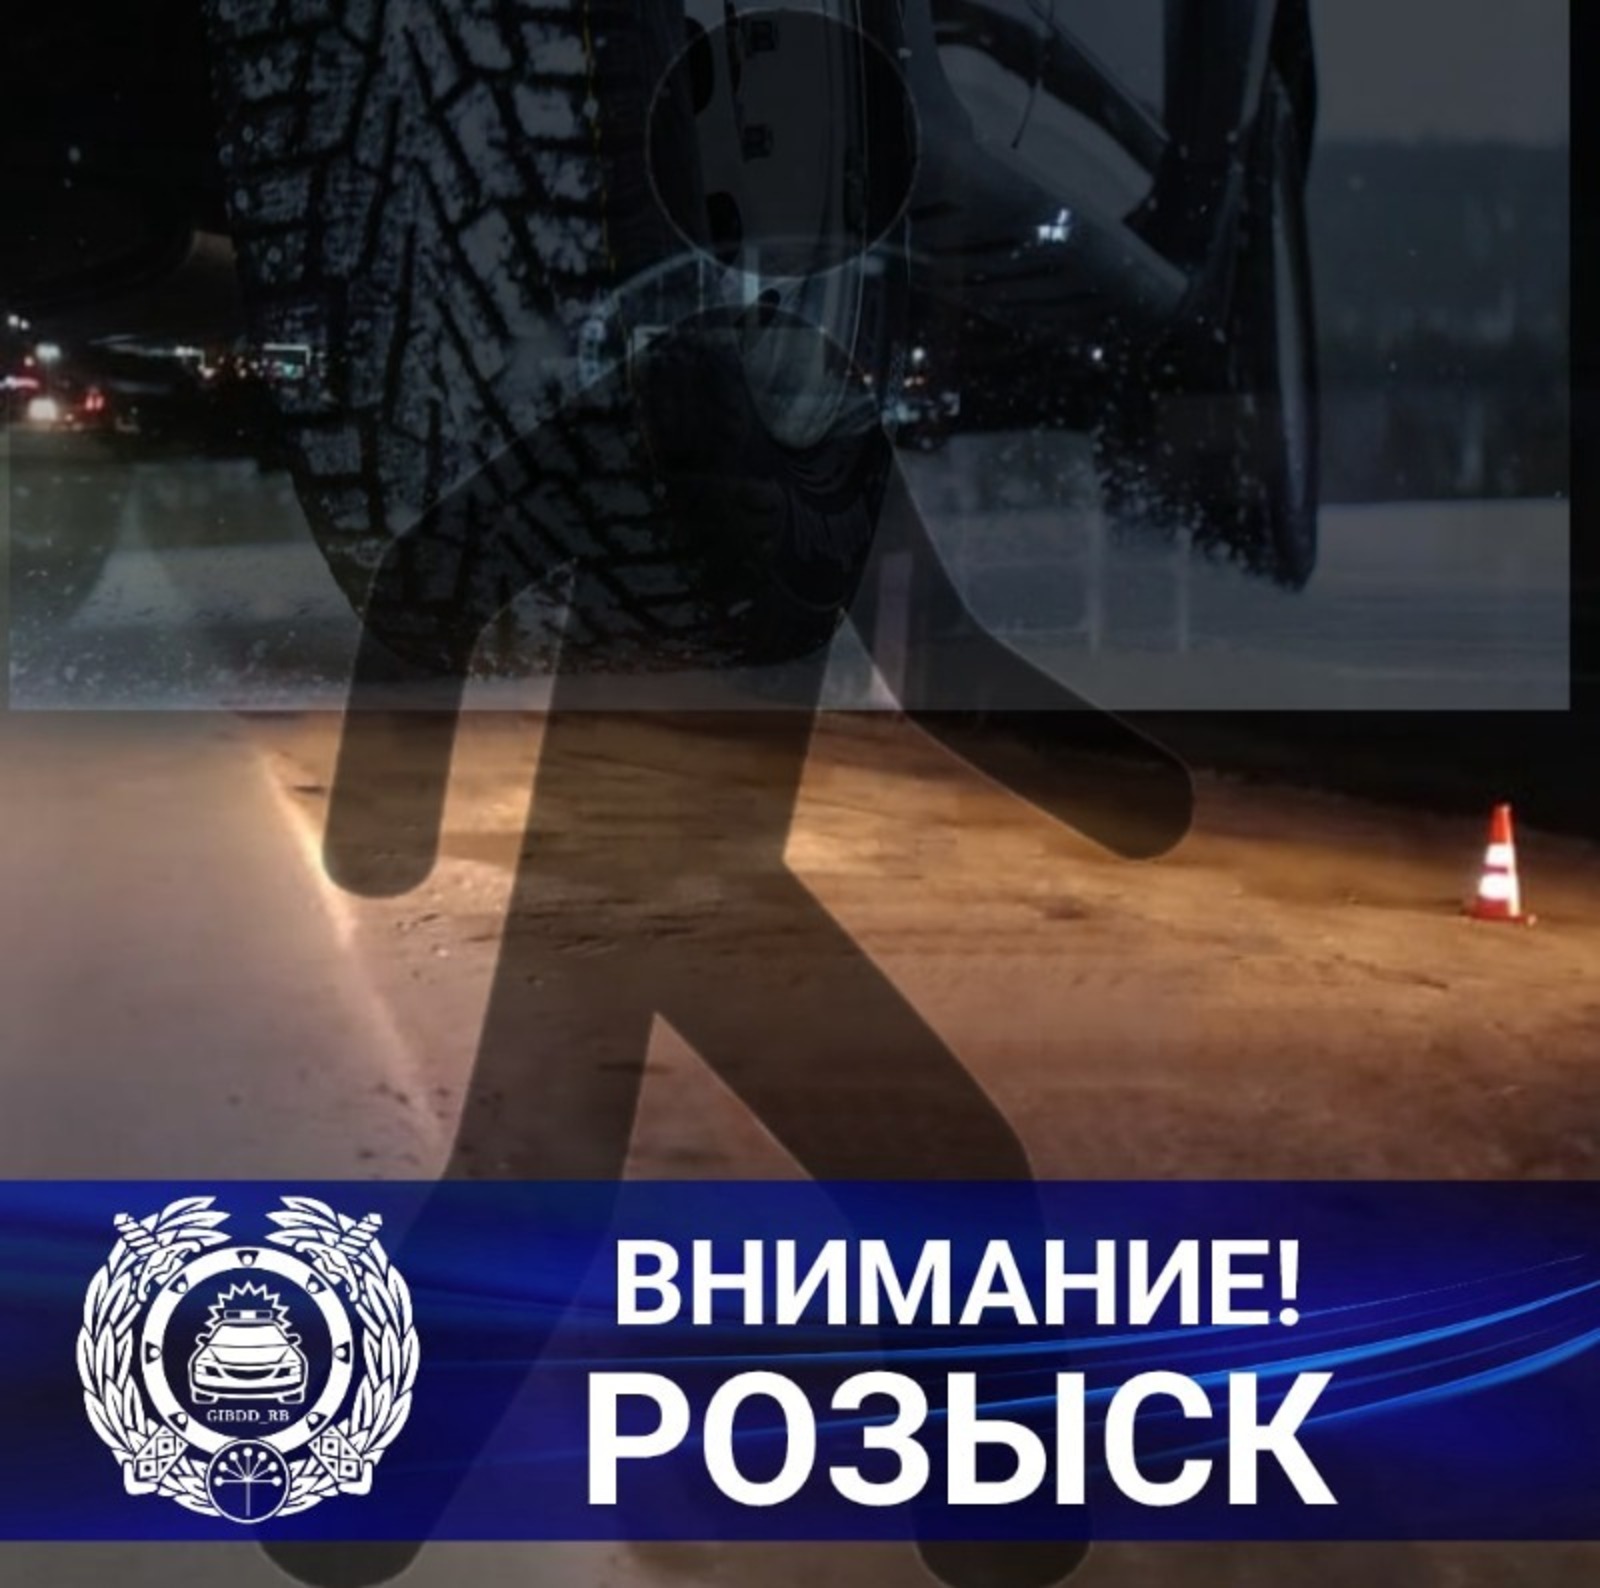 ГИБДД по Башкирии разыскивает водителя, задавившего пешехода